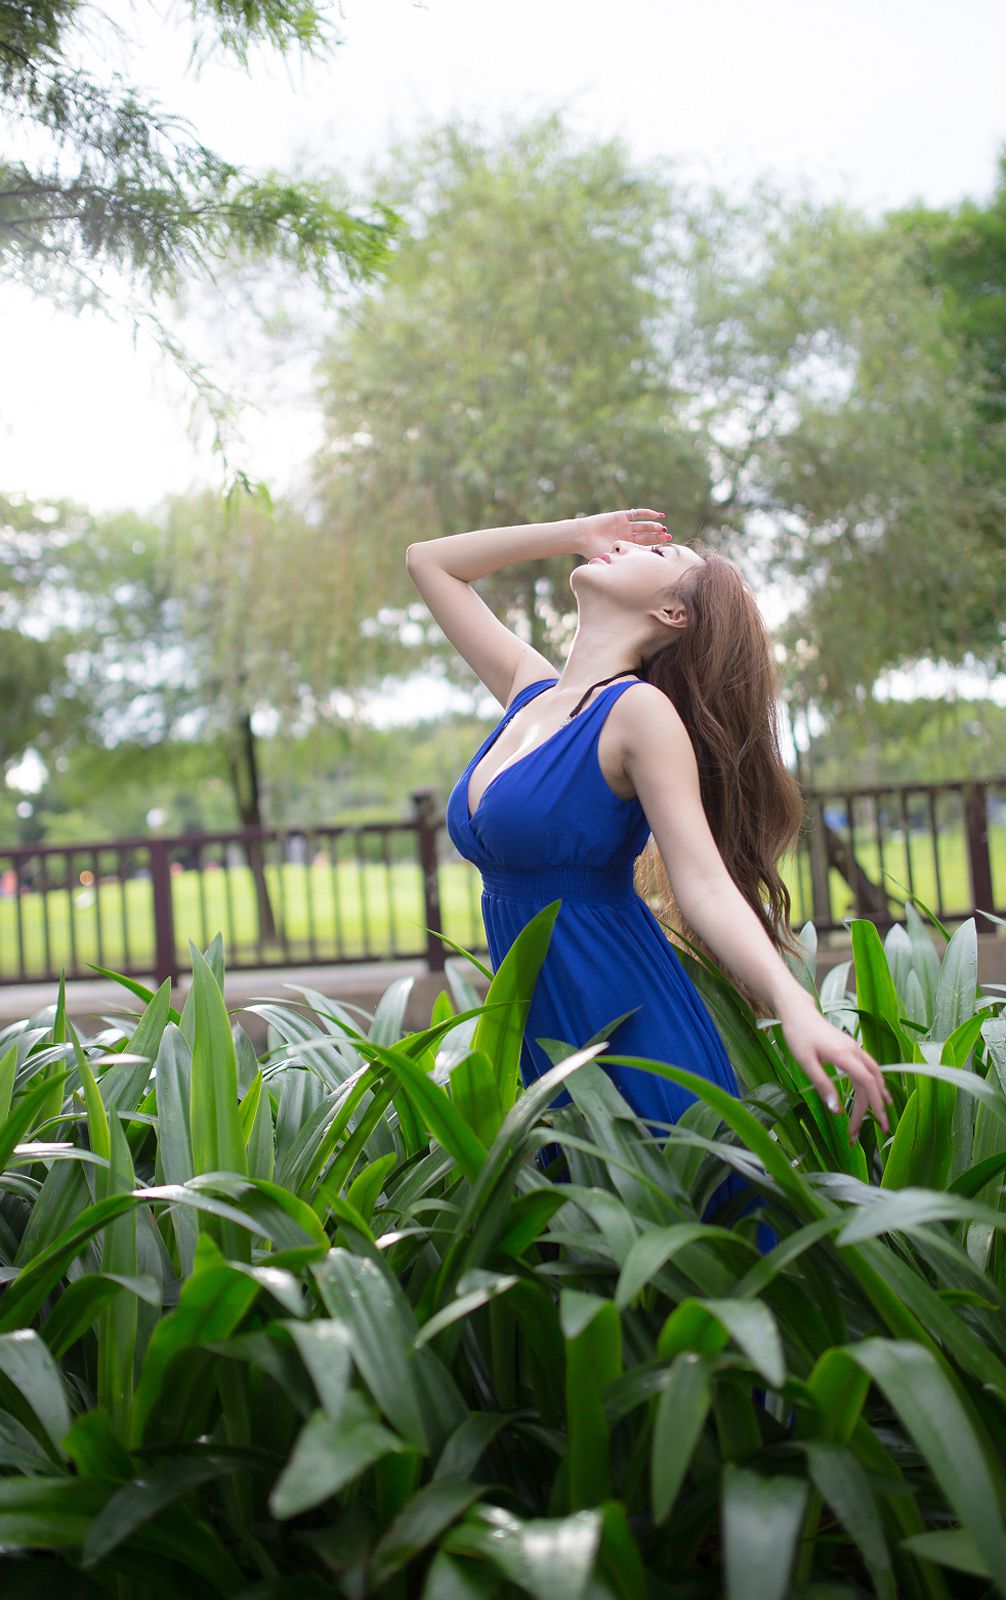 台湾性感美女模特赵芸唯美蓝色长裙户外气质写真